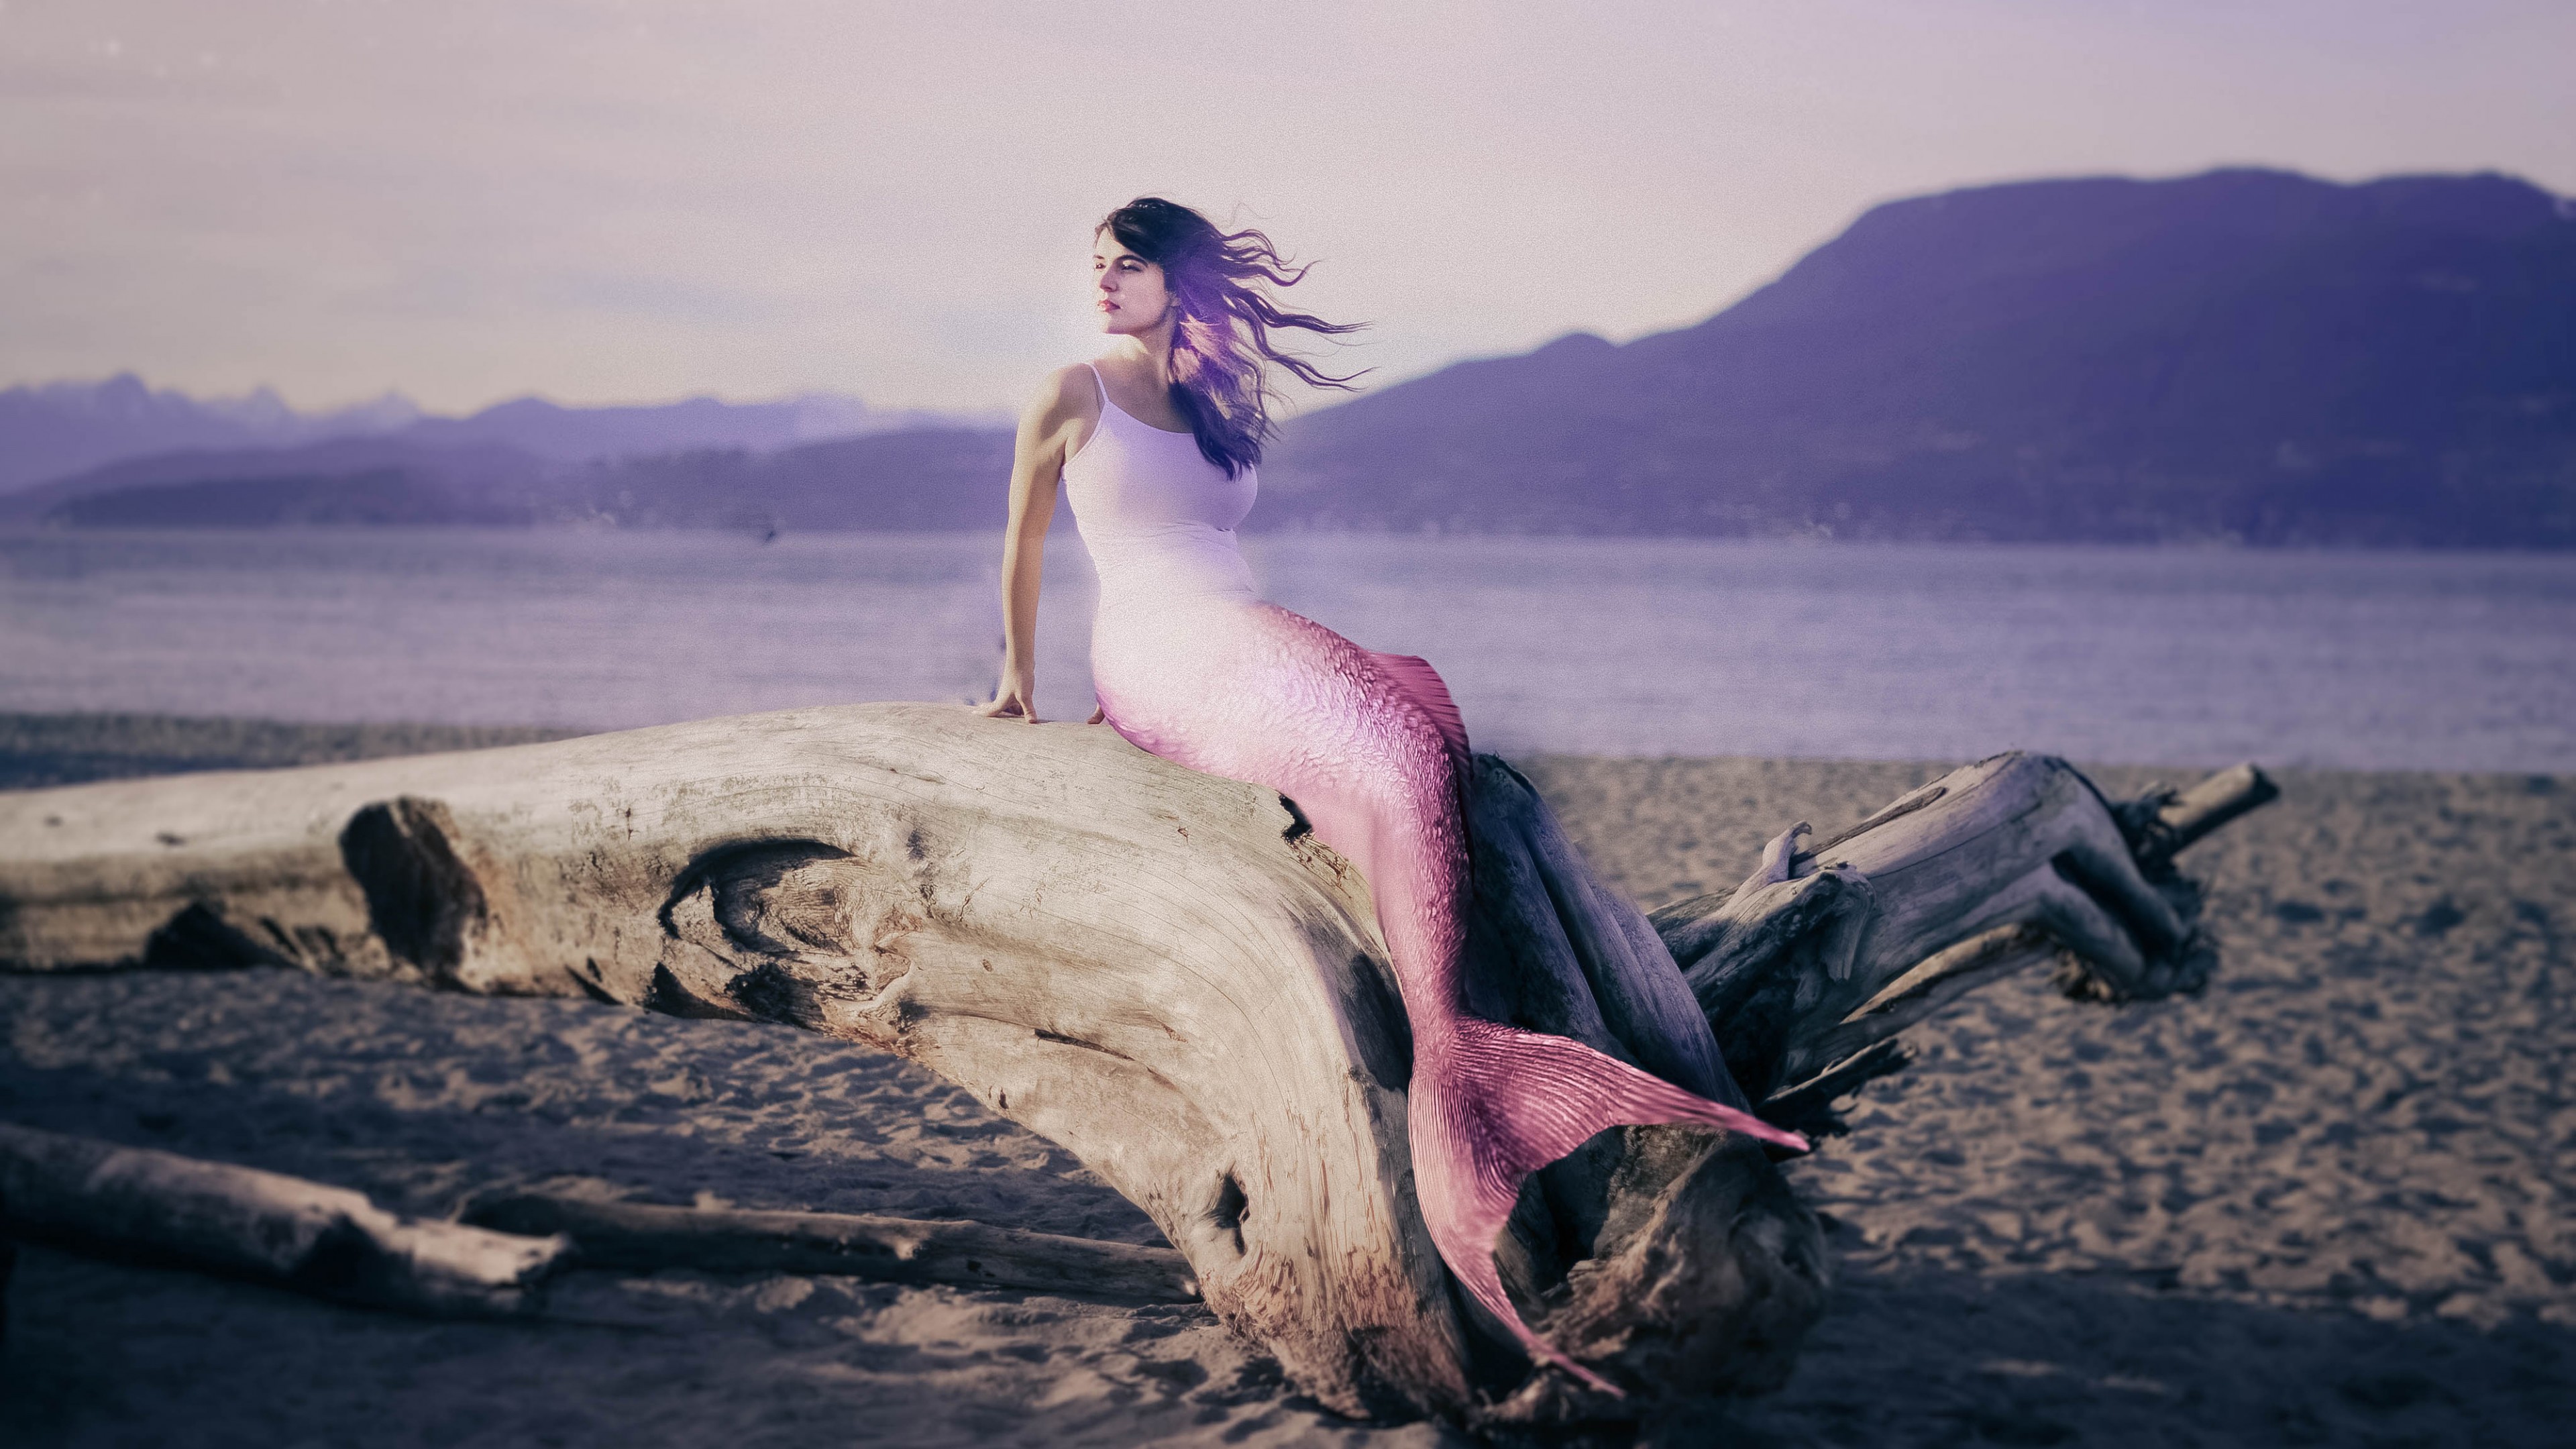 General 3840x2160 mermaids driftwood women digital art